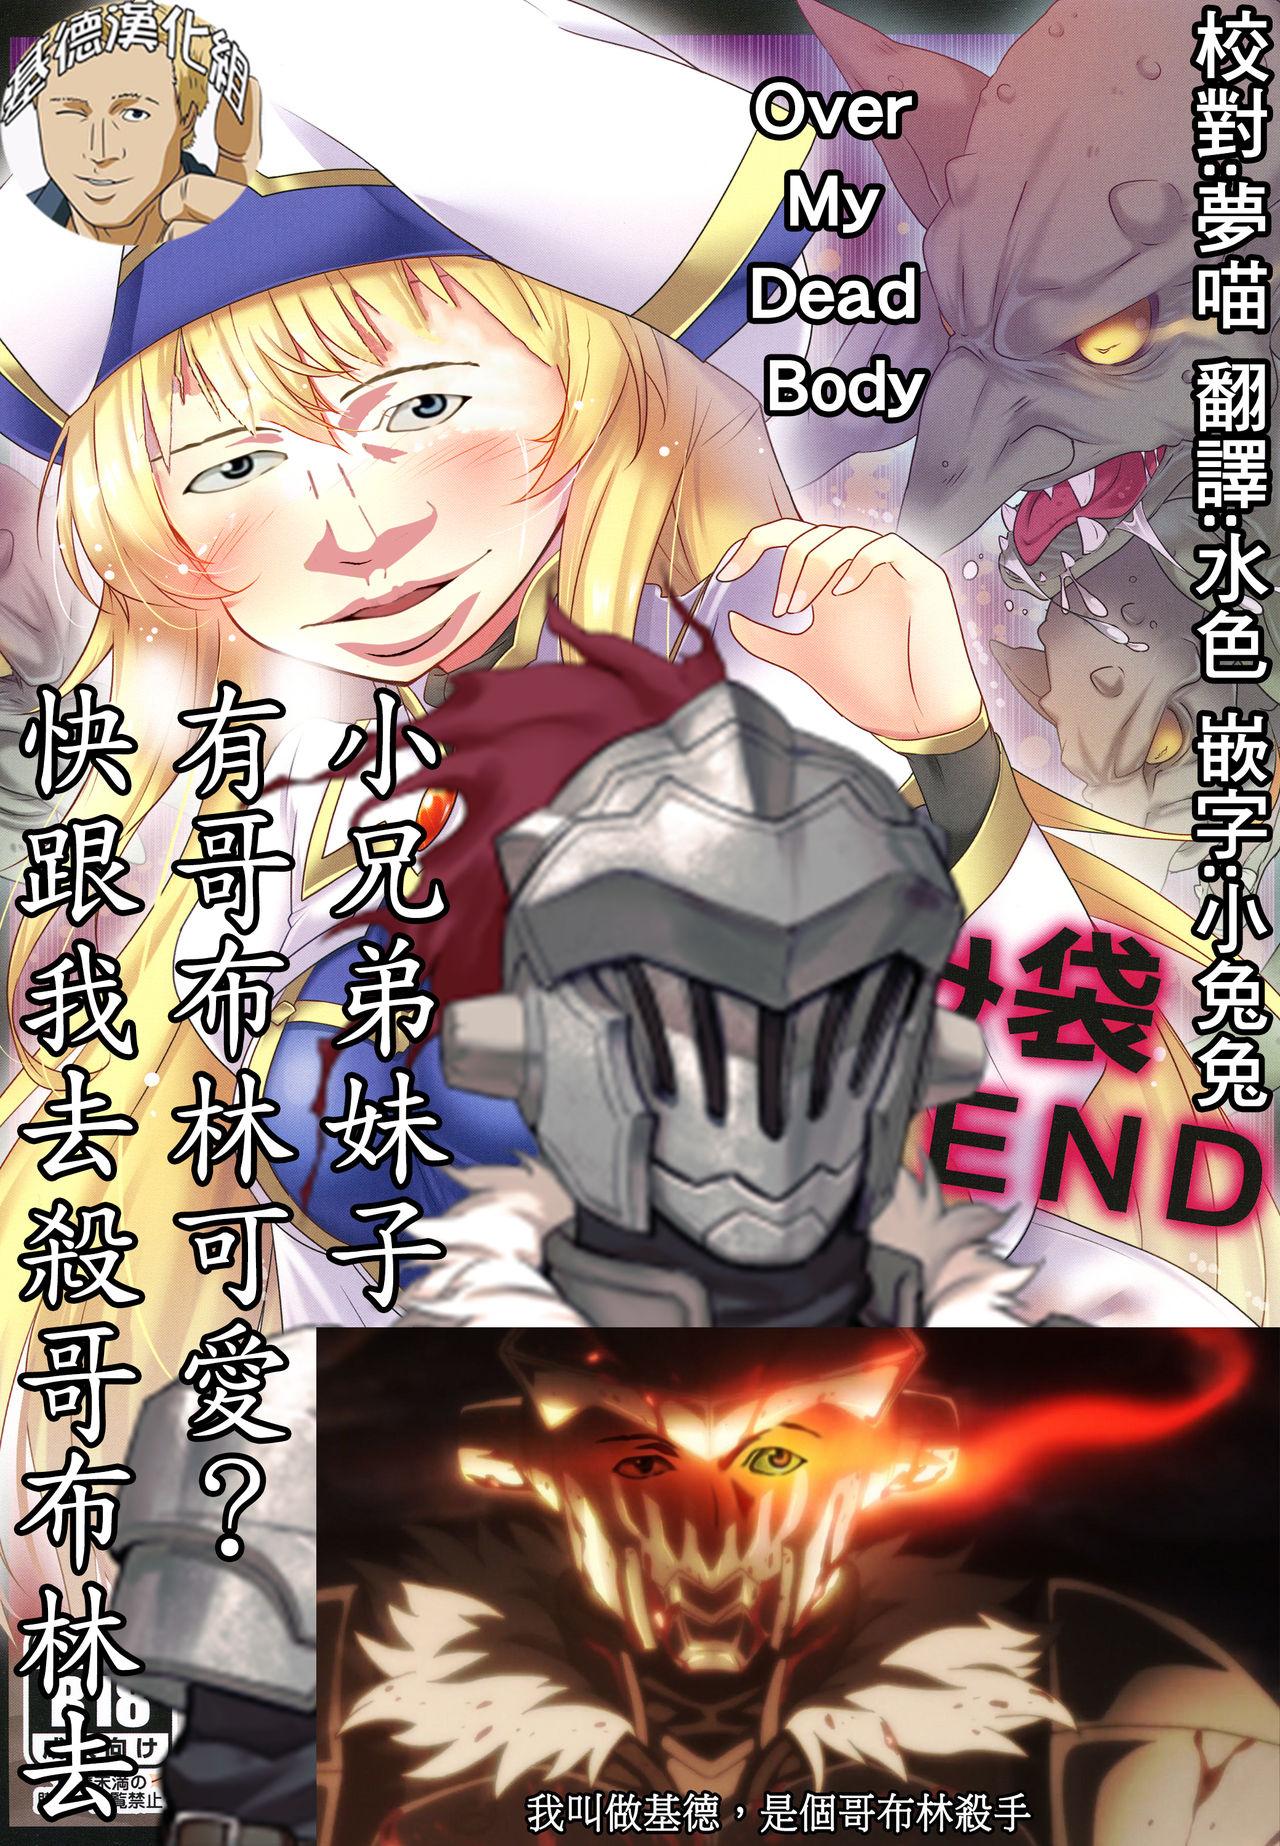 Food Haramibukuro END - Goblin slayer Solo Girl - Page 2